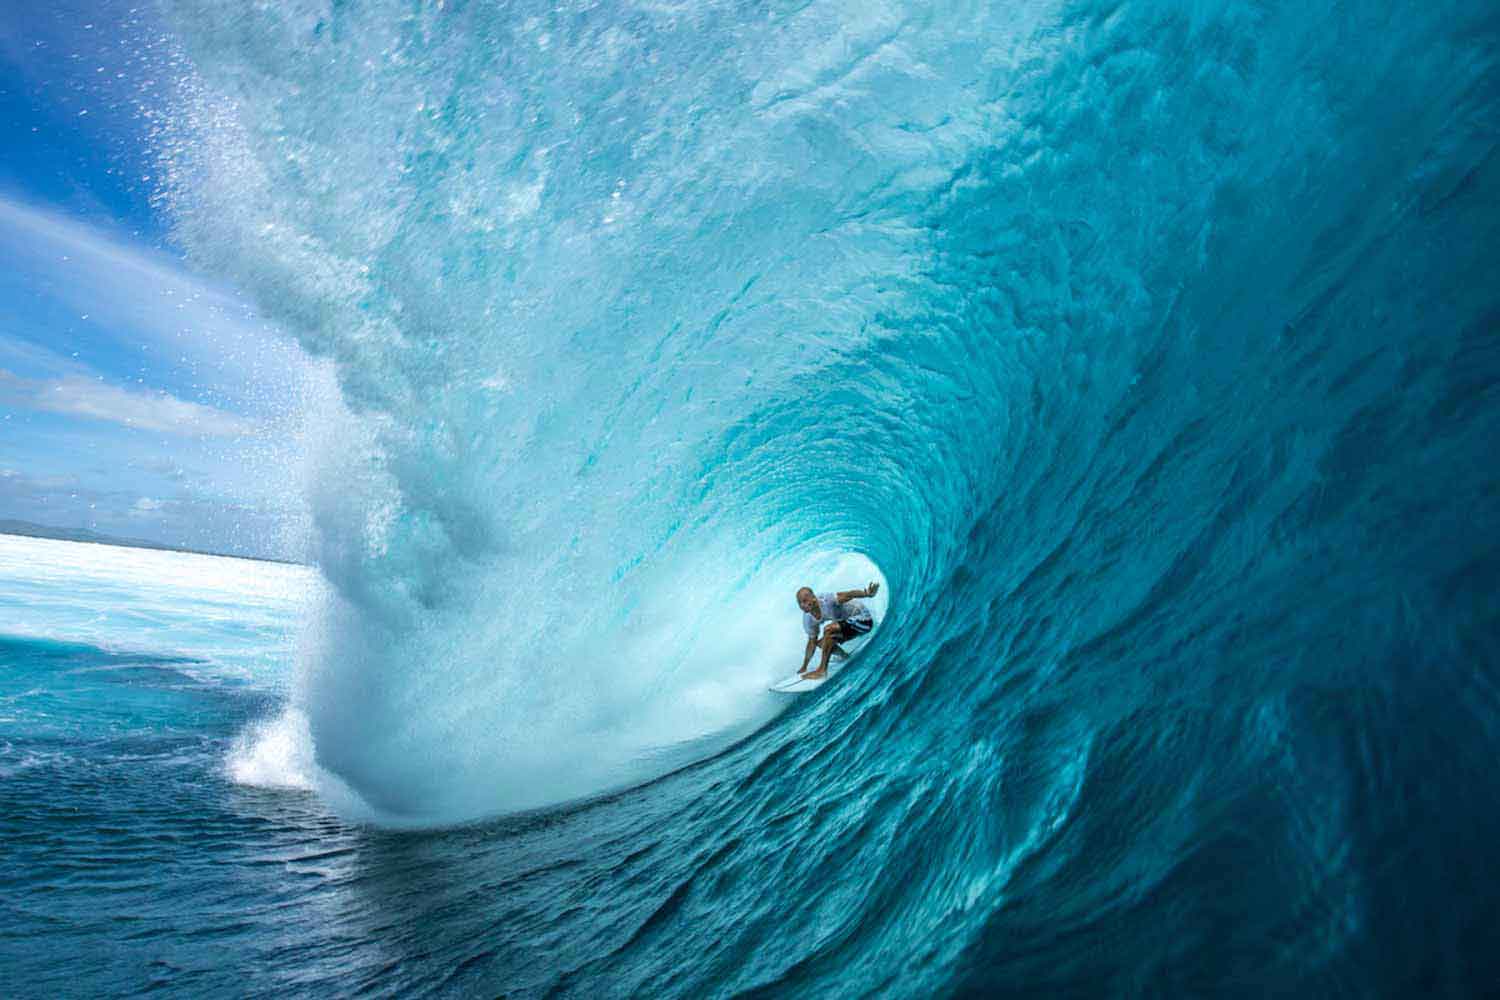 Got a legit surf clip? Enter to win!